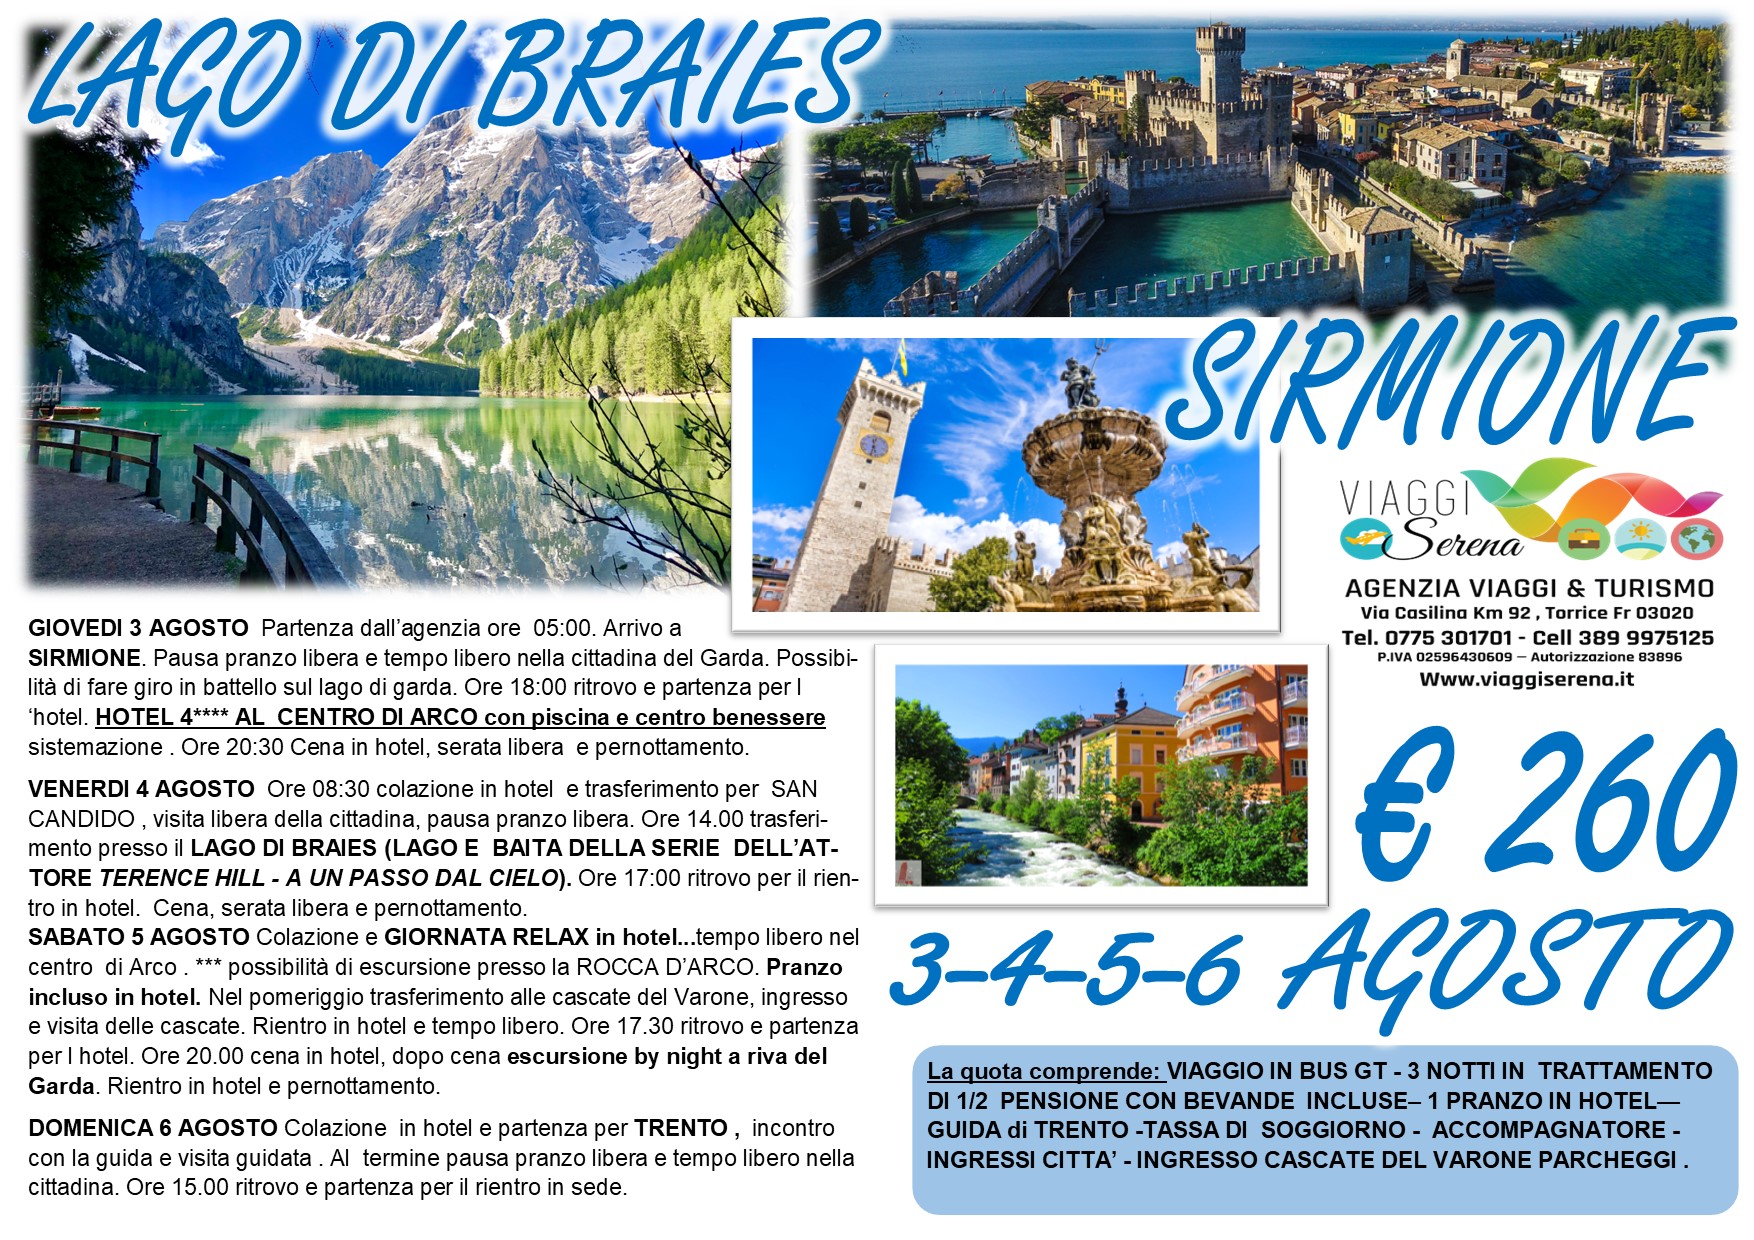 Viaggi di Gruppo: Sirmione, Lago di Braies, Candido,  Cascate del Varone & Trento 3-4-5-6 Agosto € 260,00